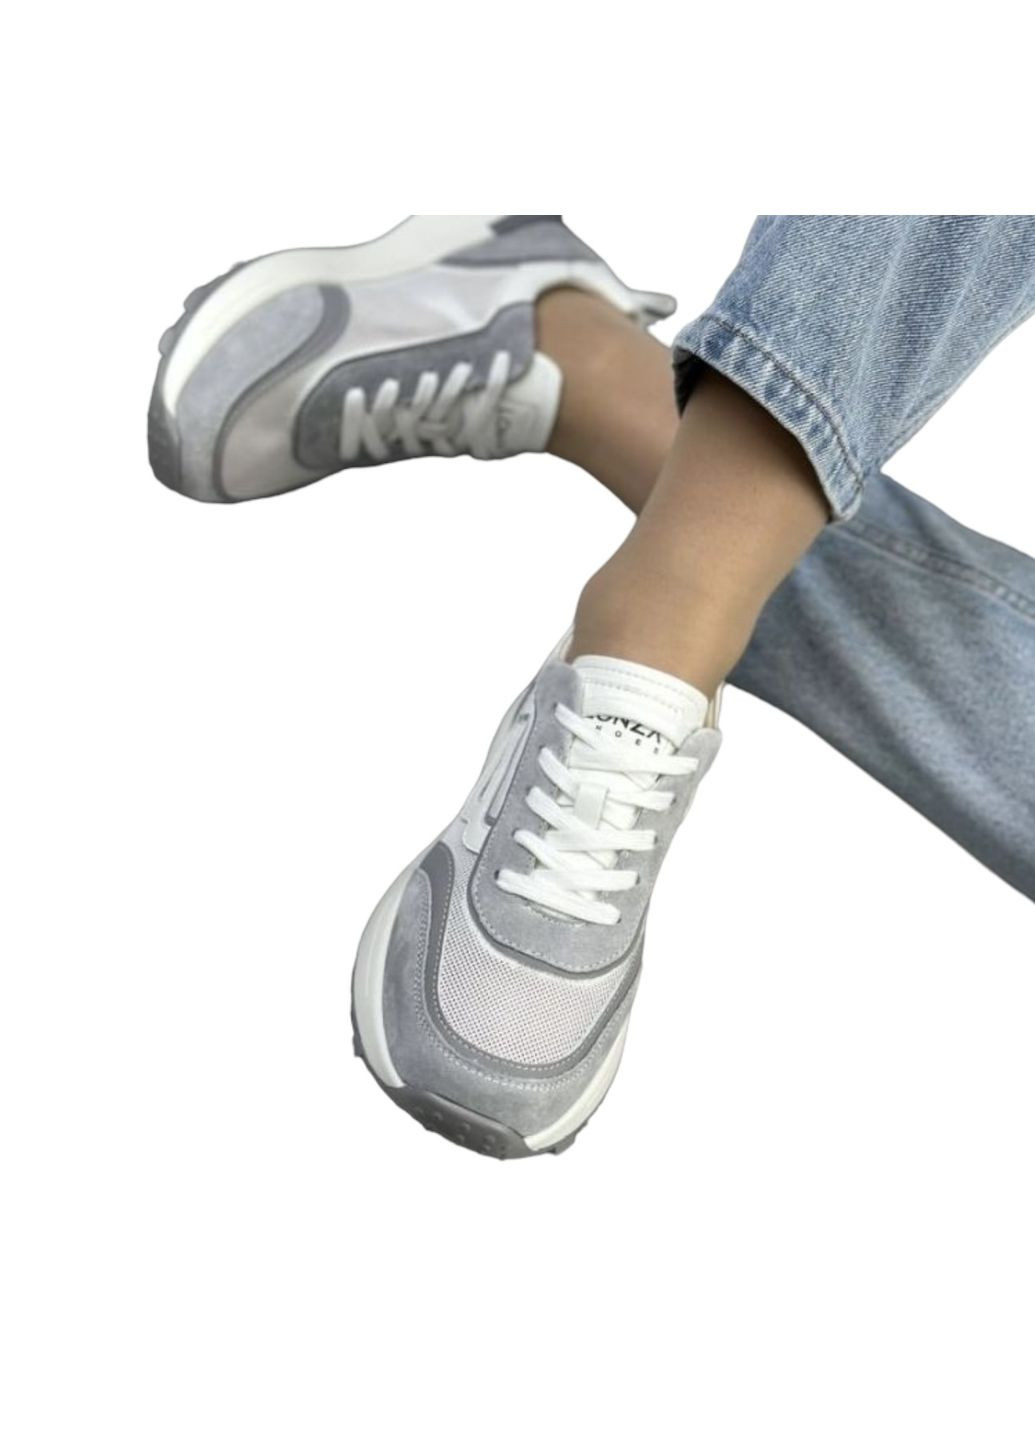 Серые всесезонные женские кроссовки бело-серые кожаные l-12-11r 23 см(р) Lonza